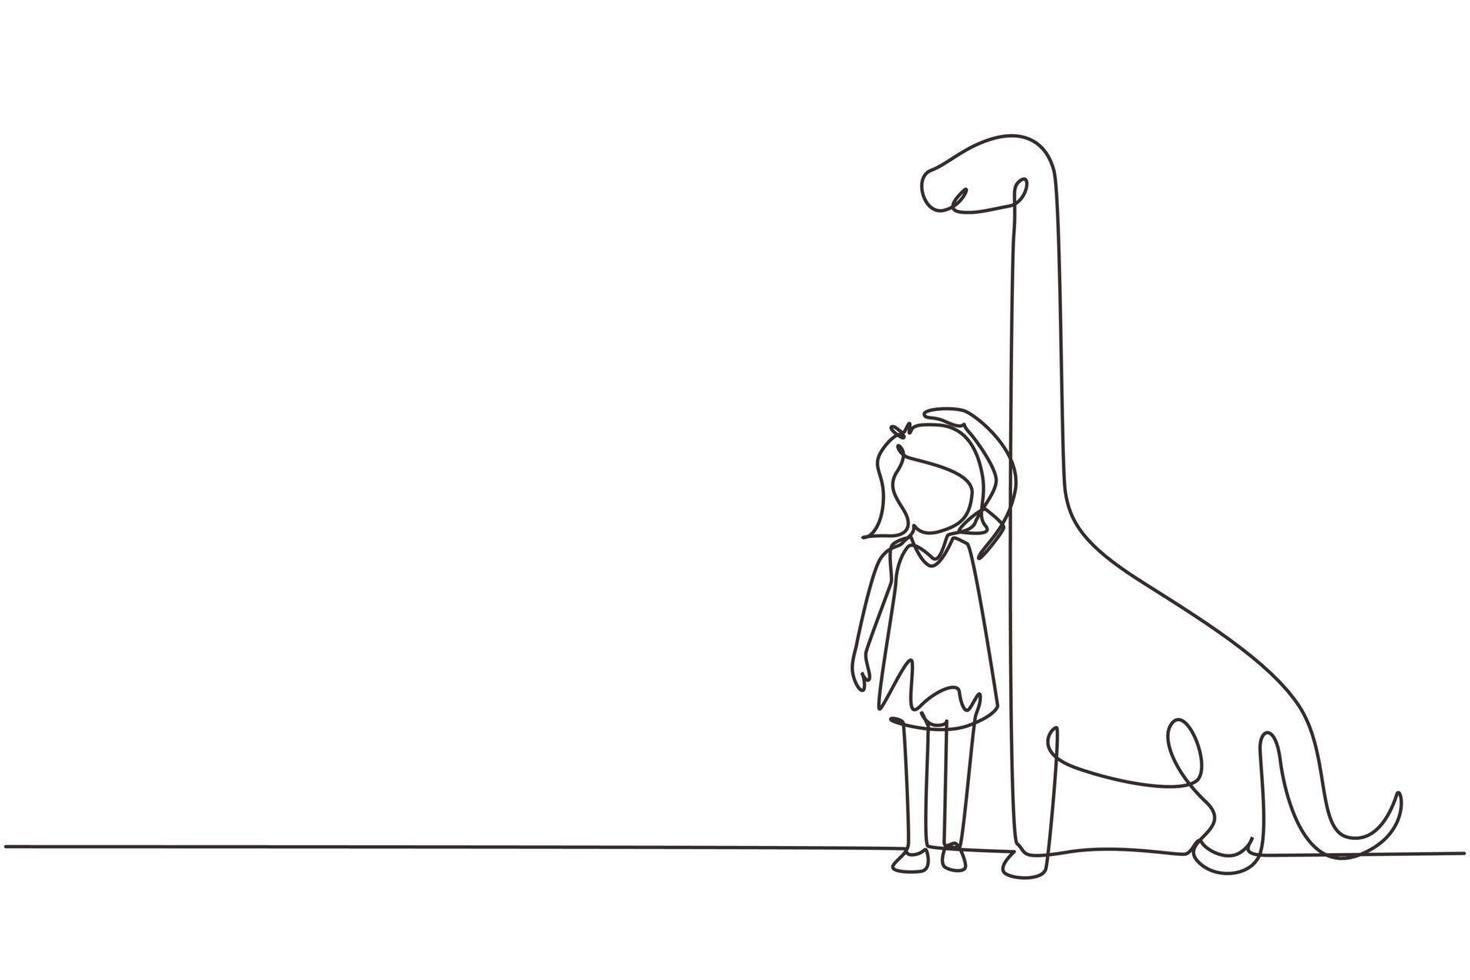 una sola linea di disegno bambina che misura la sua altezza con il grafico dell'altezza del brontosauro sul muro. il bambino misura la crescita. bambino che misura l'altezza. illustrazione vettoriale grafica di disegno a linea continua